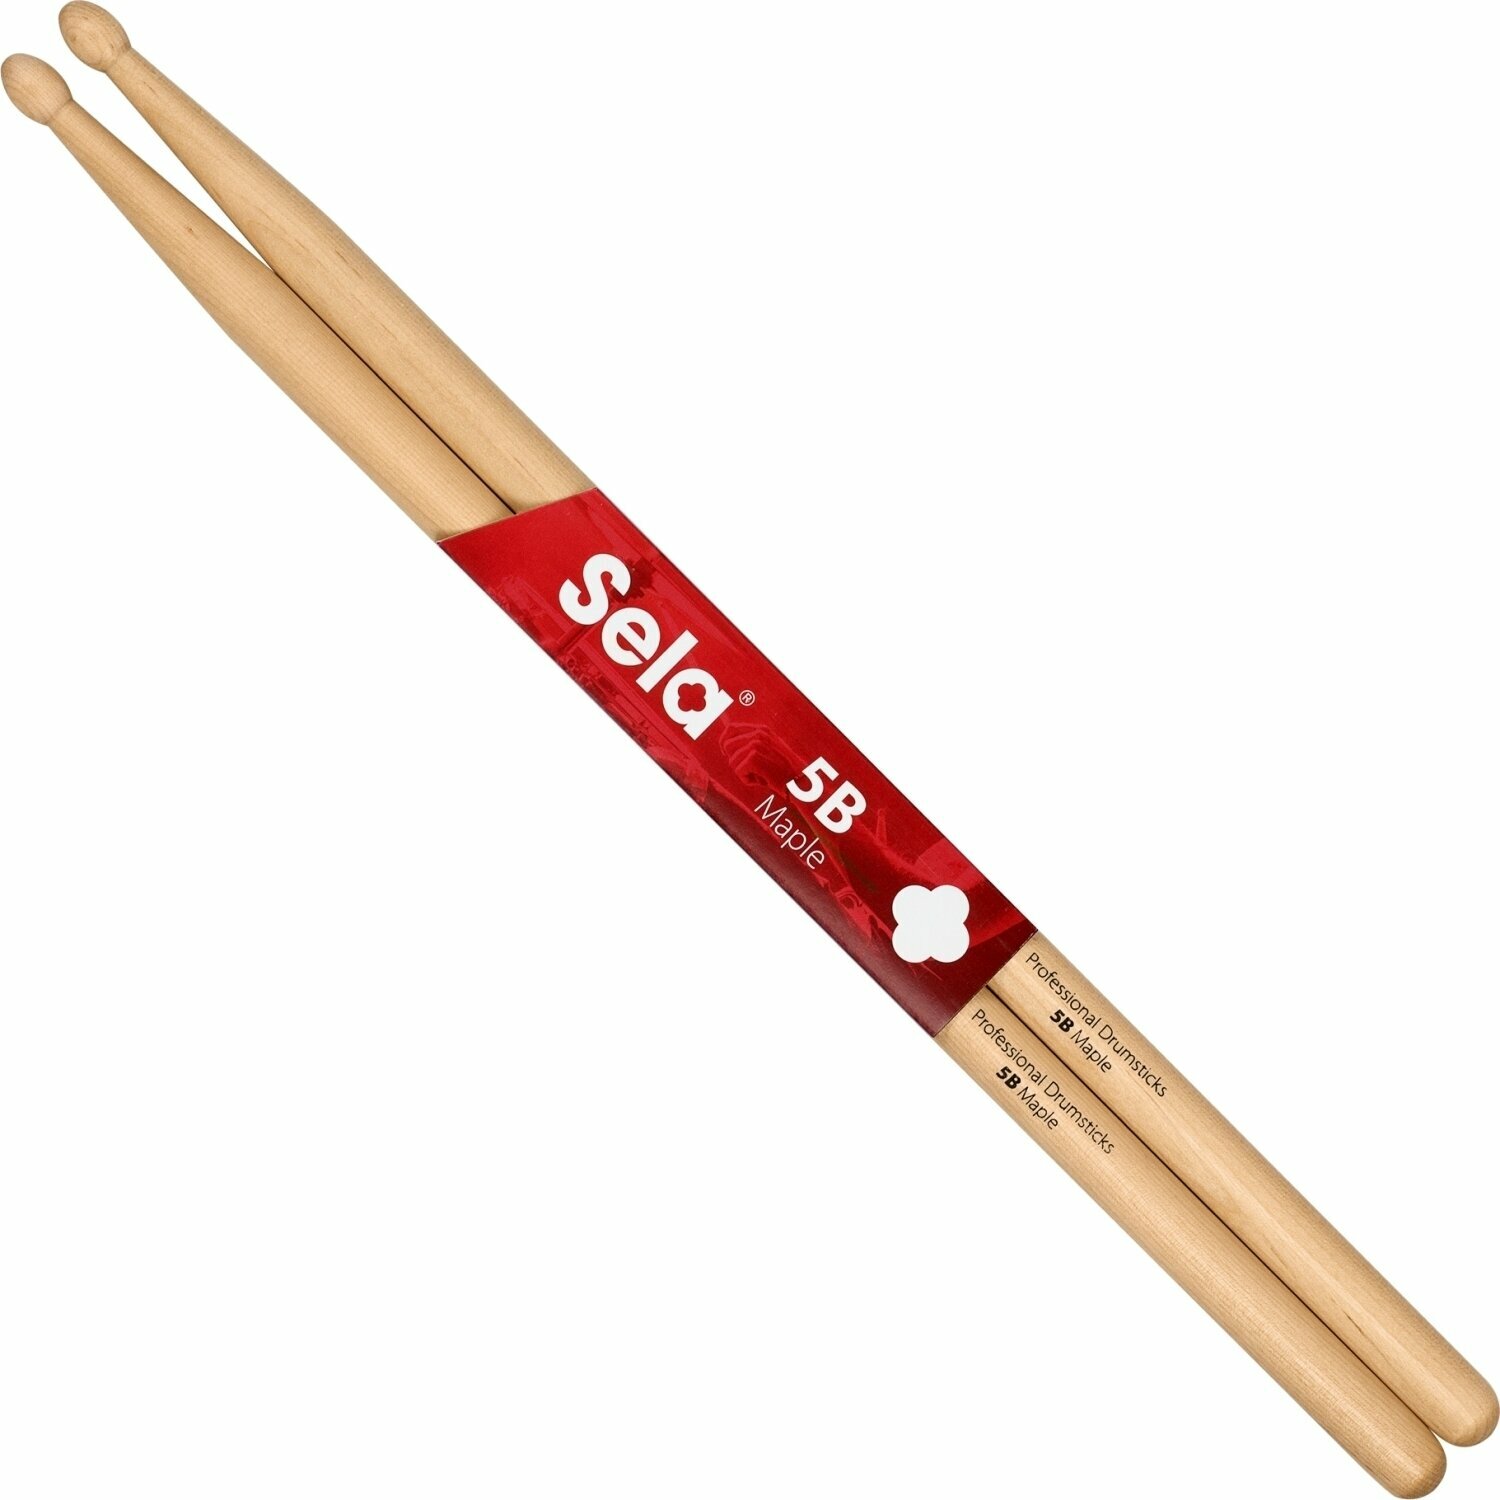 Drumstokken Sela SE 273 Professional Drumsticks 5B - 6 Pair Drumstokken